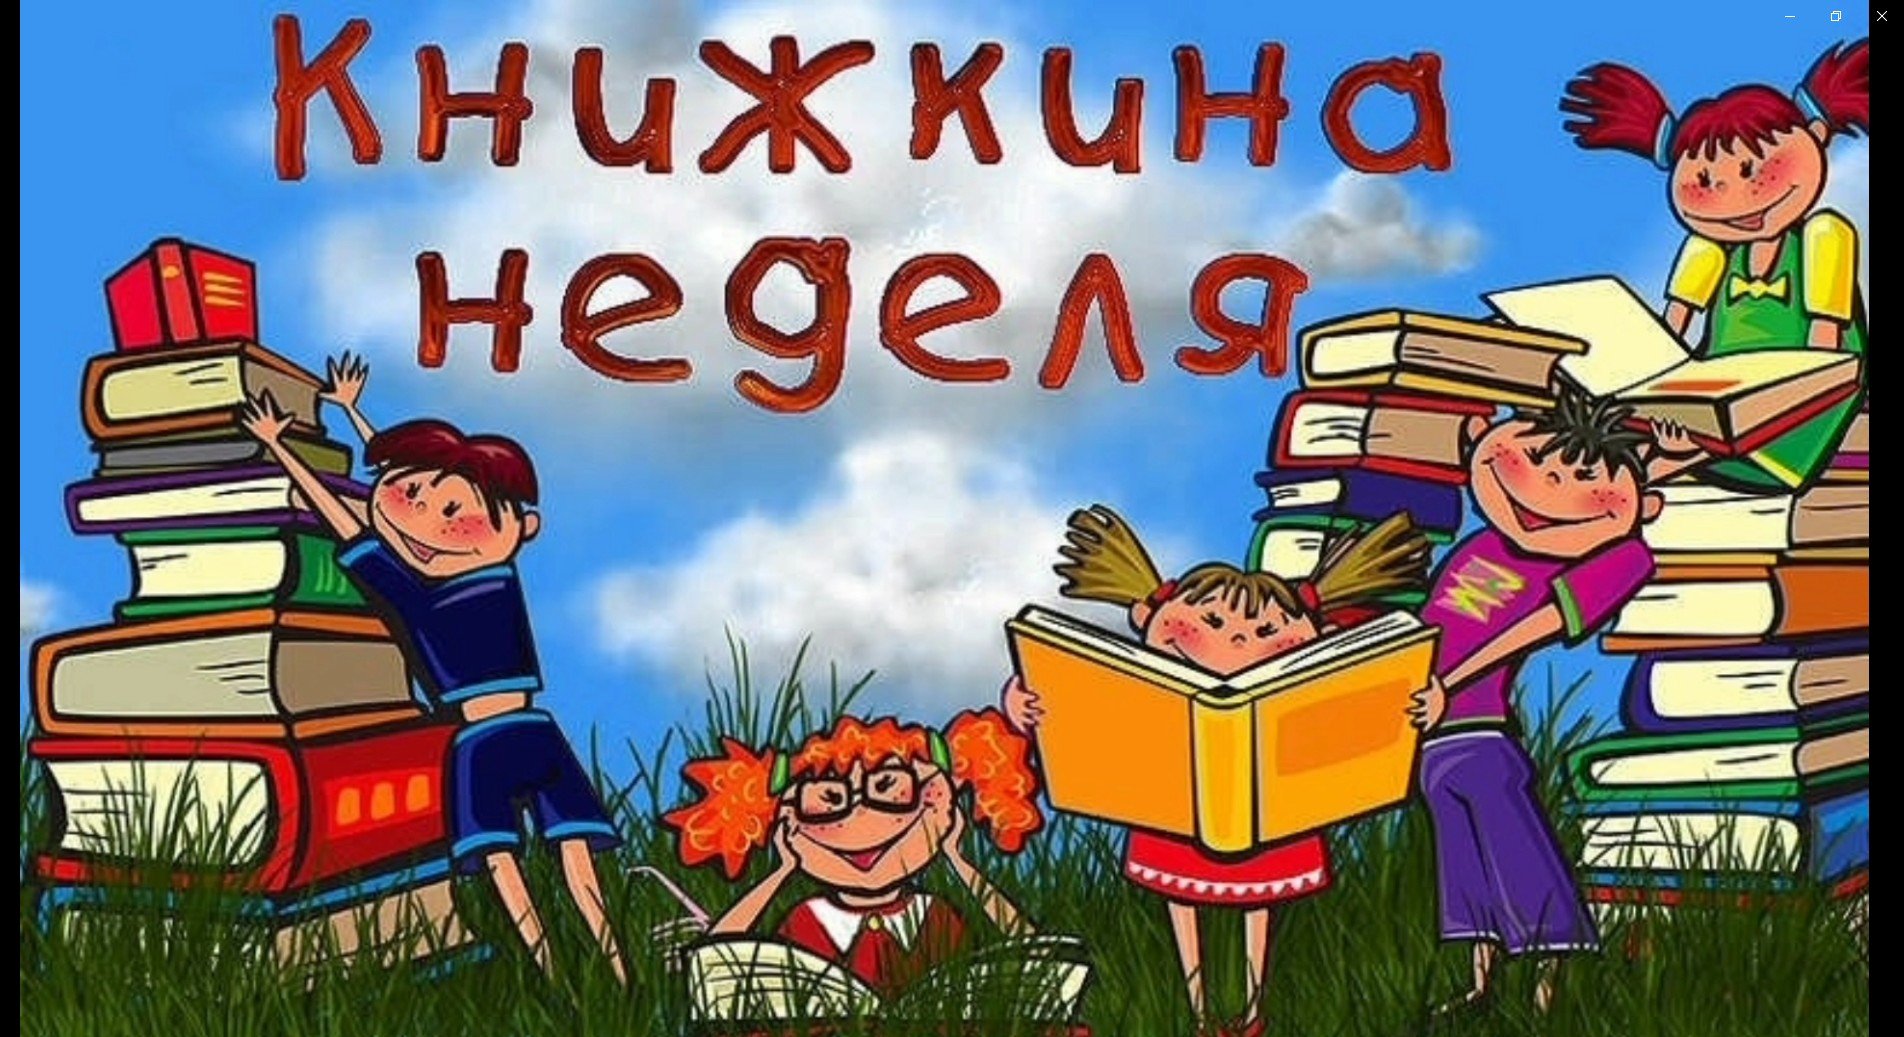 Неделя детской книги в детском саду средняя